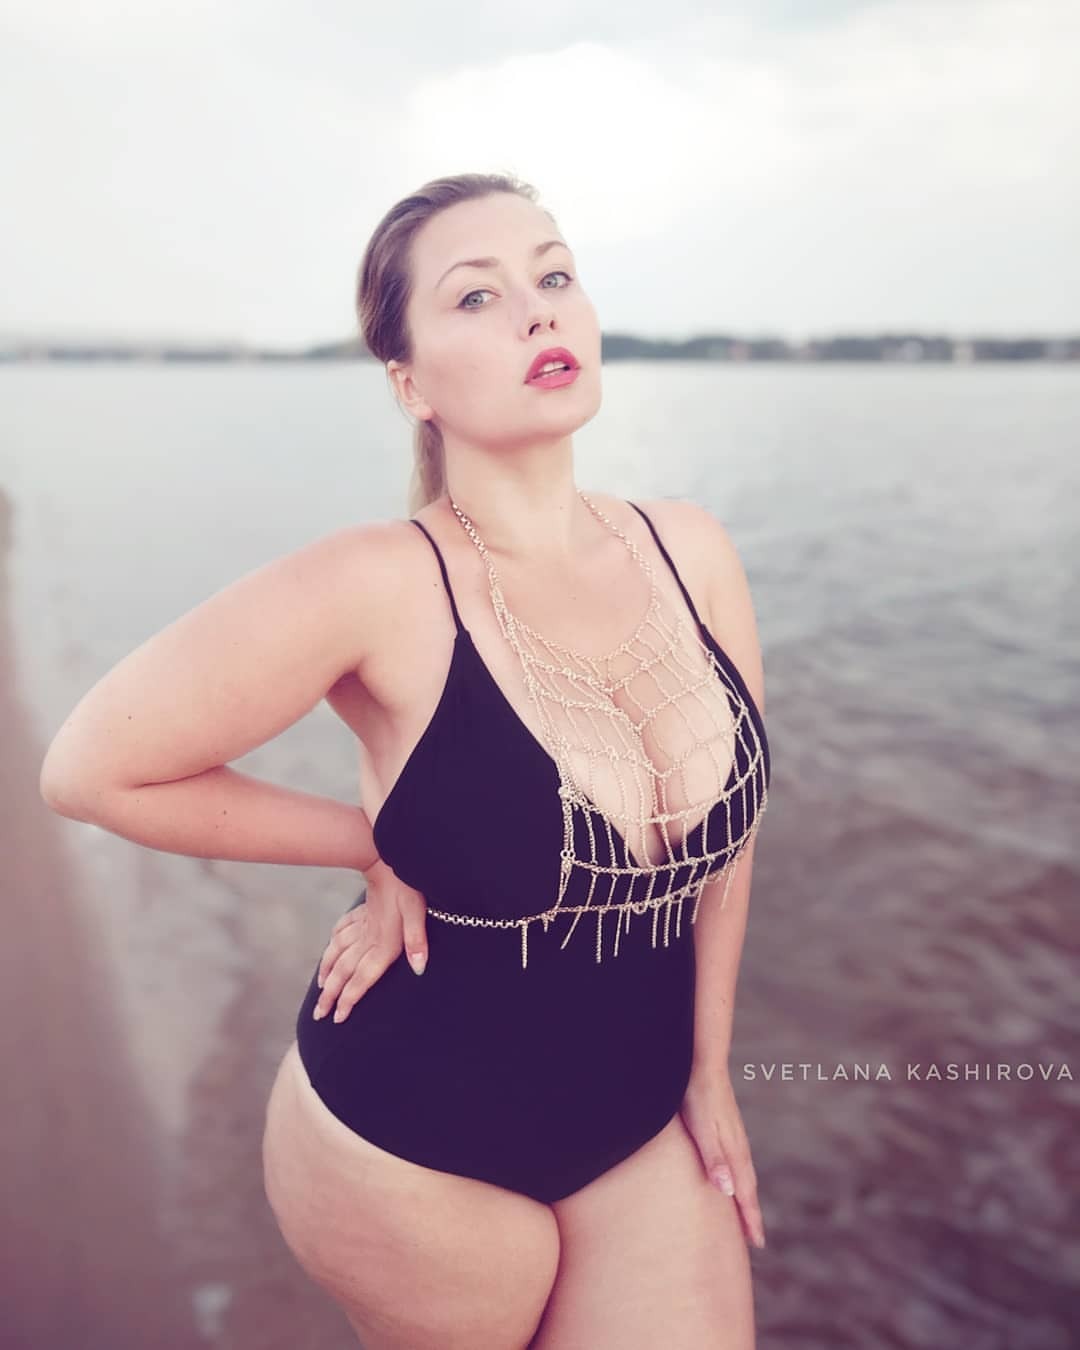 Russian curvy models, plus size beauty